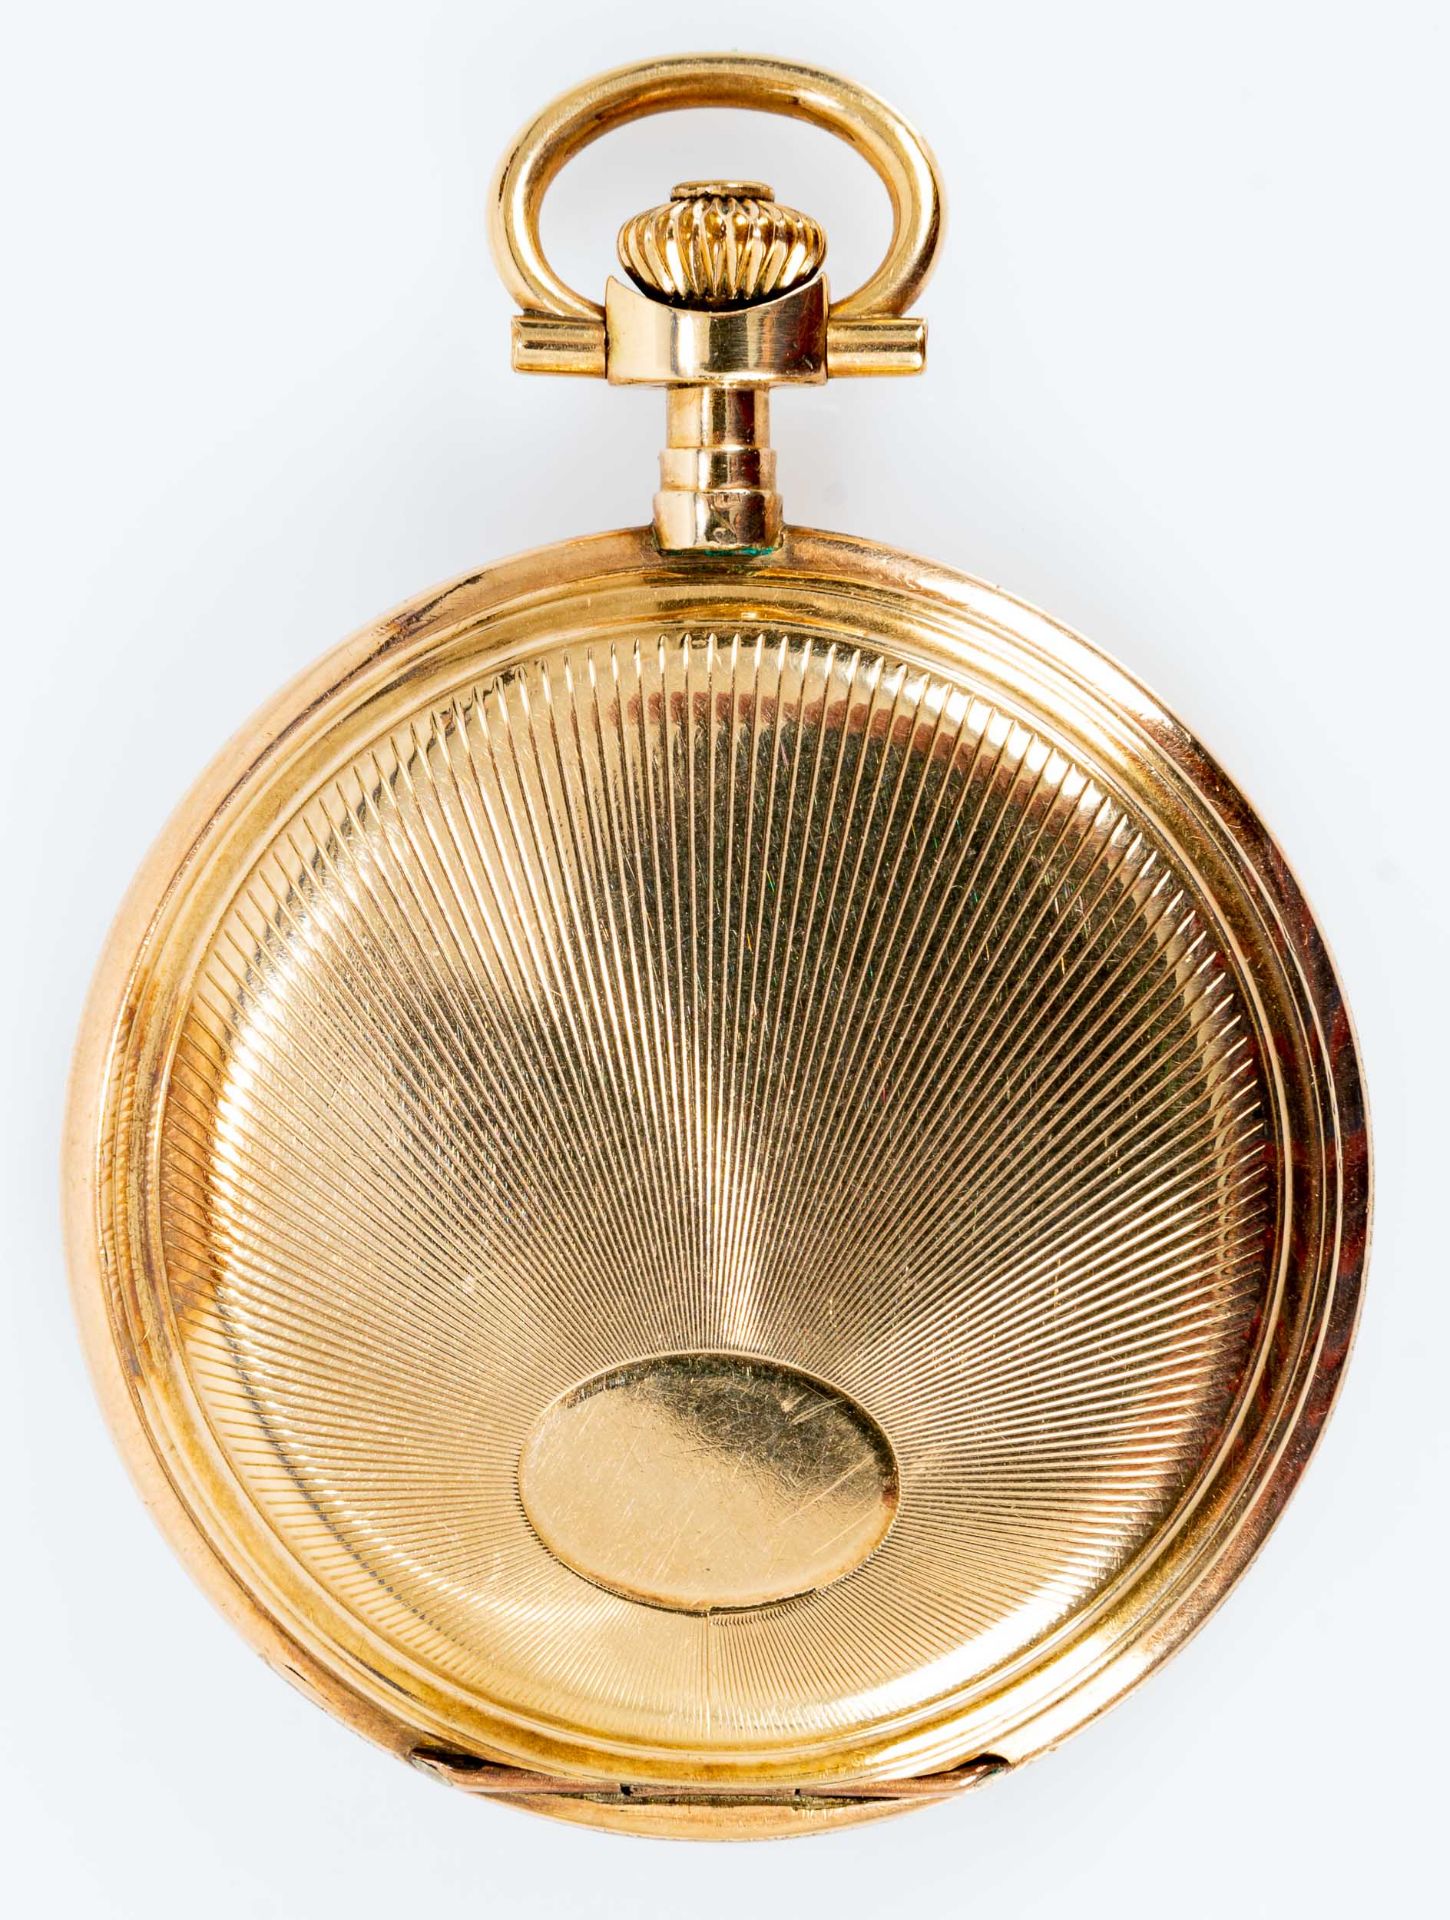 Sprungdeckel- Taschenuhr um 1920/ 30; vergoldeter Staubdeckel, beide Hauptdeckel in 585er Gelbgold  - Bild 4 aus 8